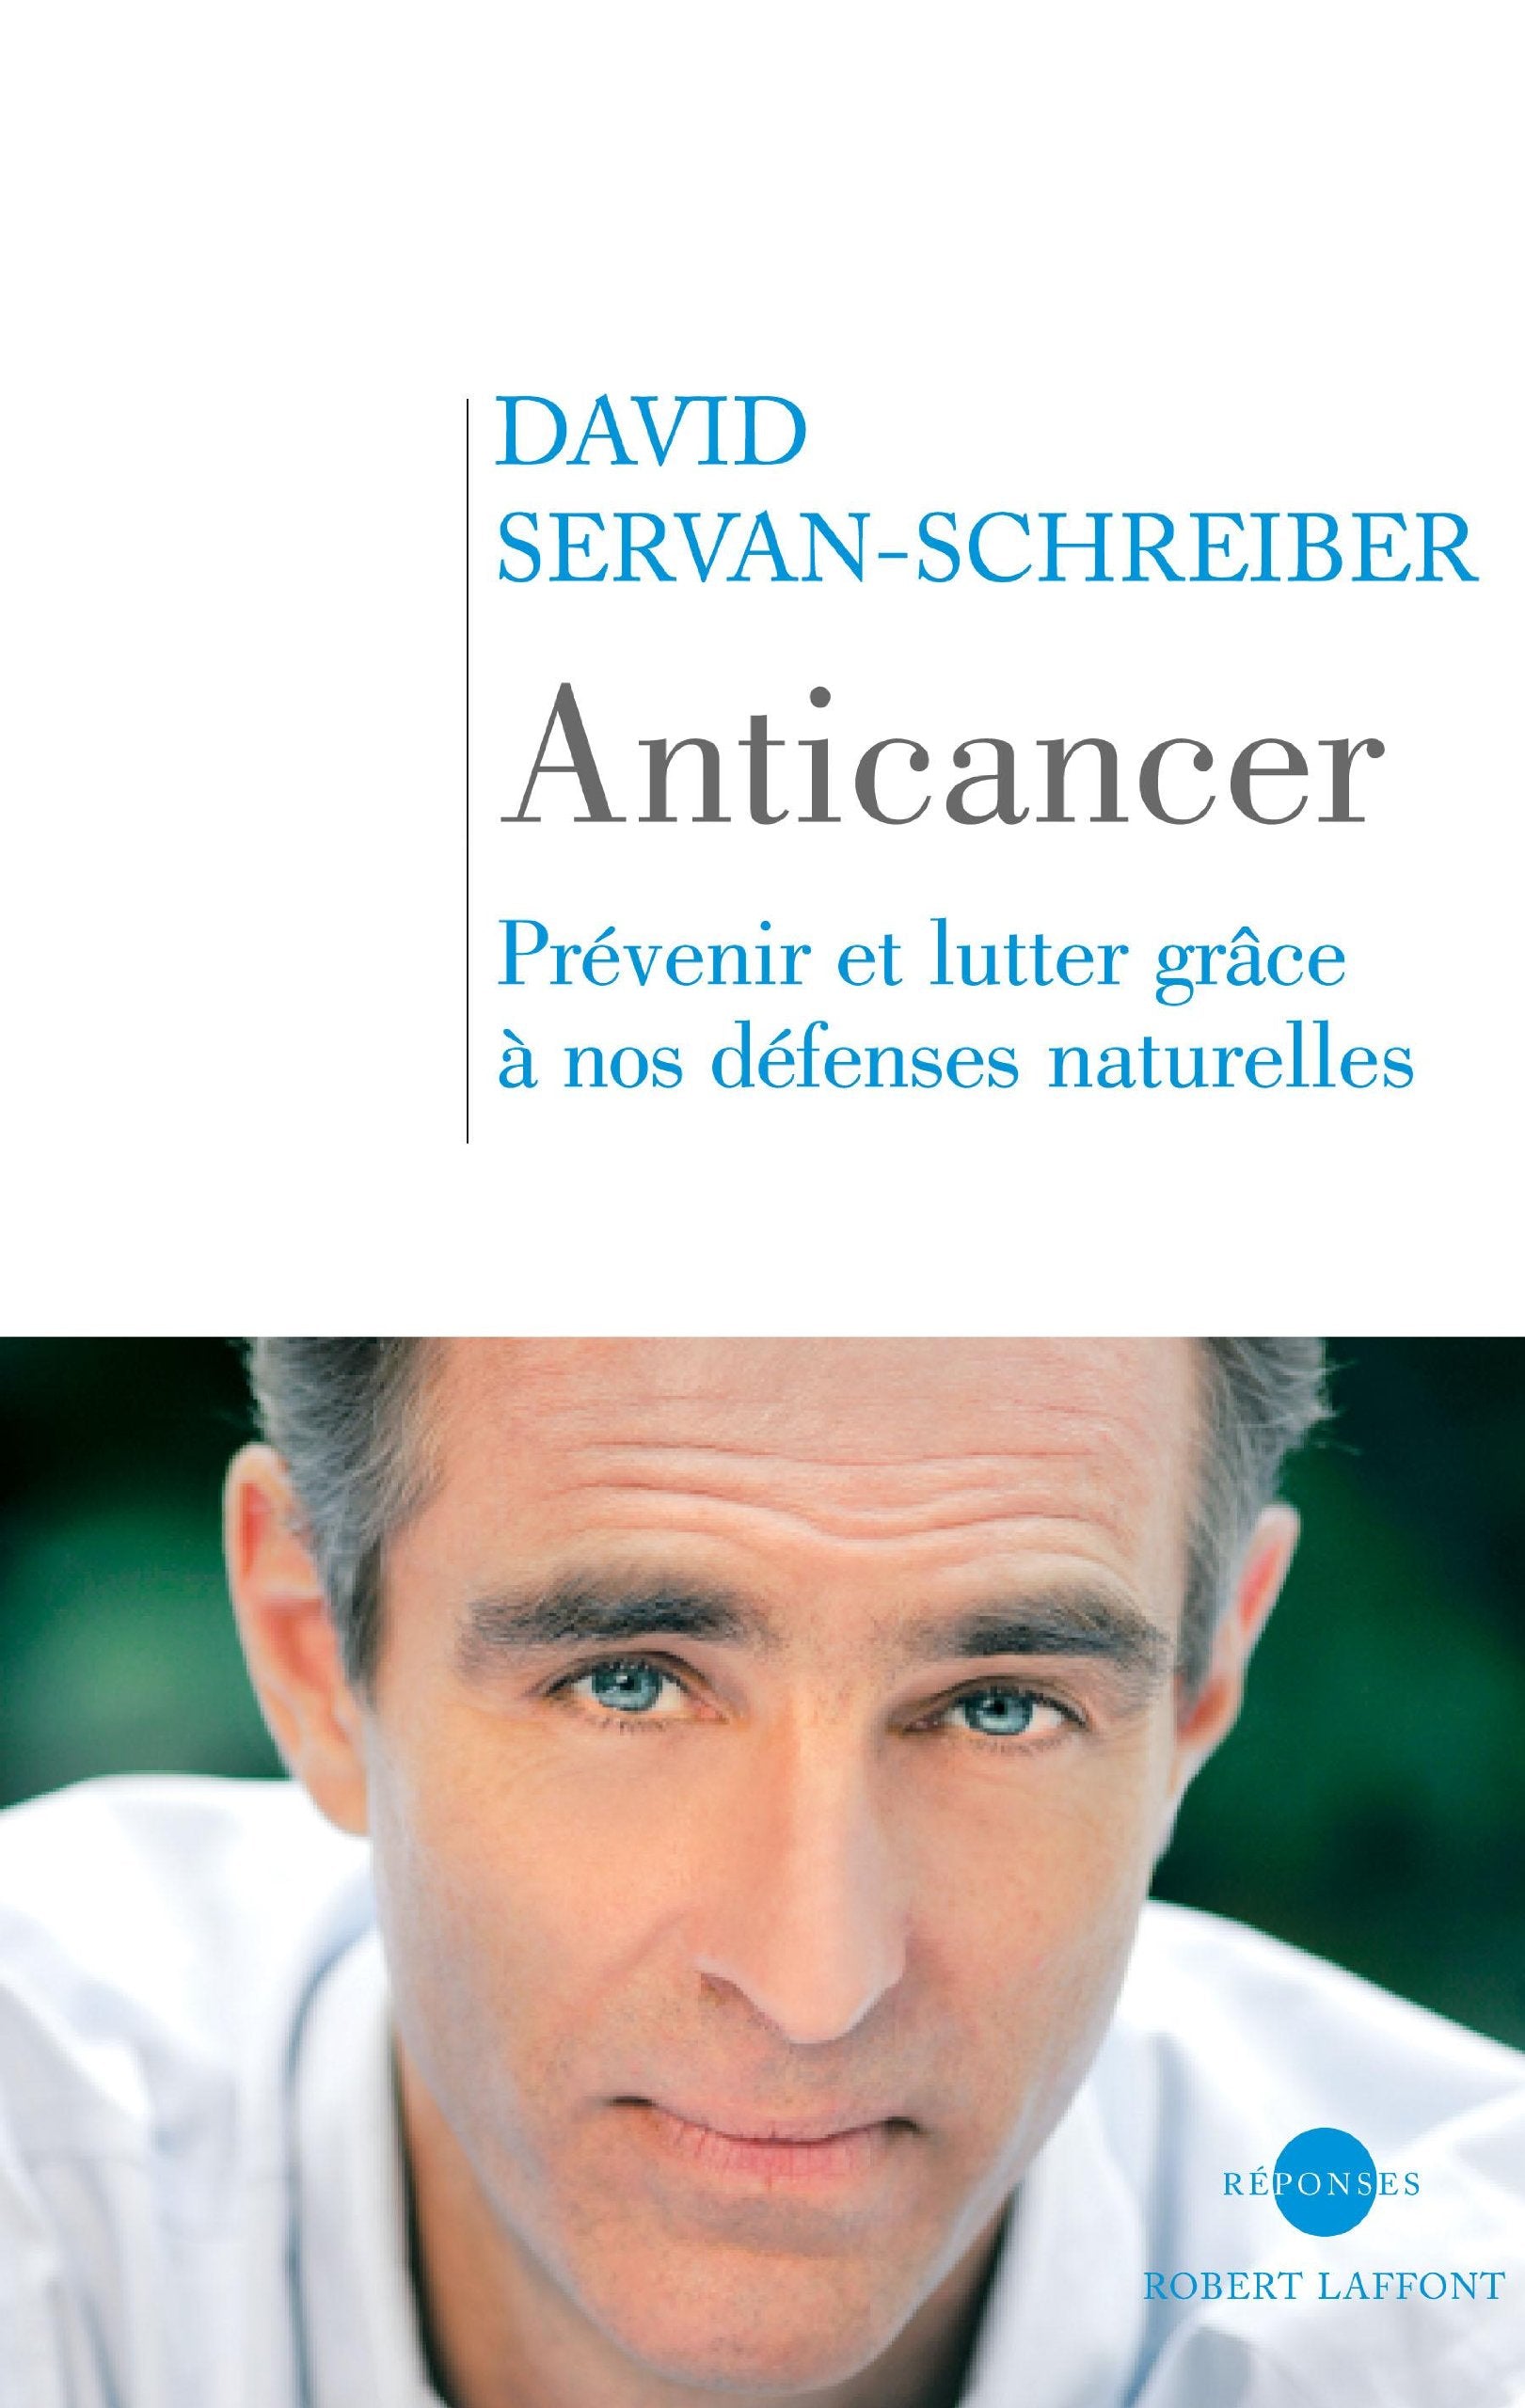 Livre ISBN 222110871X Anticancer : Prévenir et lutter grâce à nos défenses naturelles (David Servan-Schreiber)